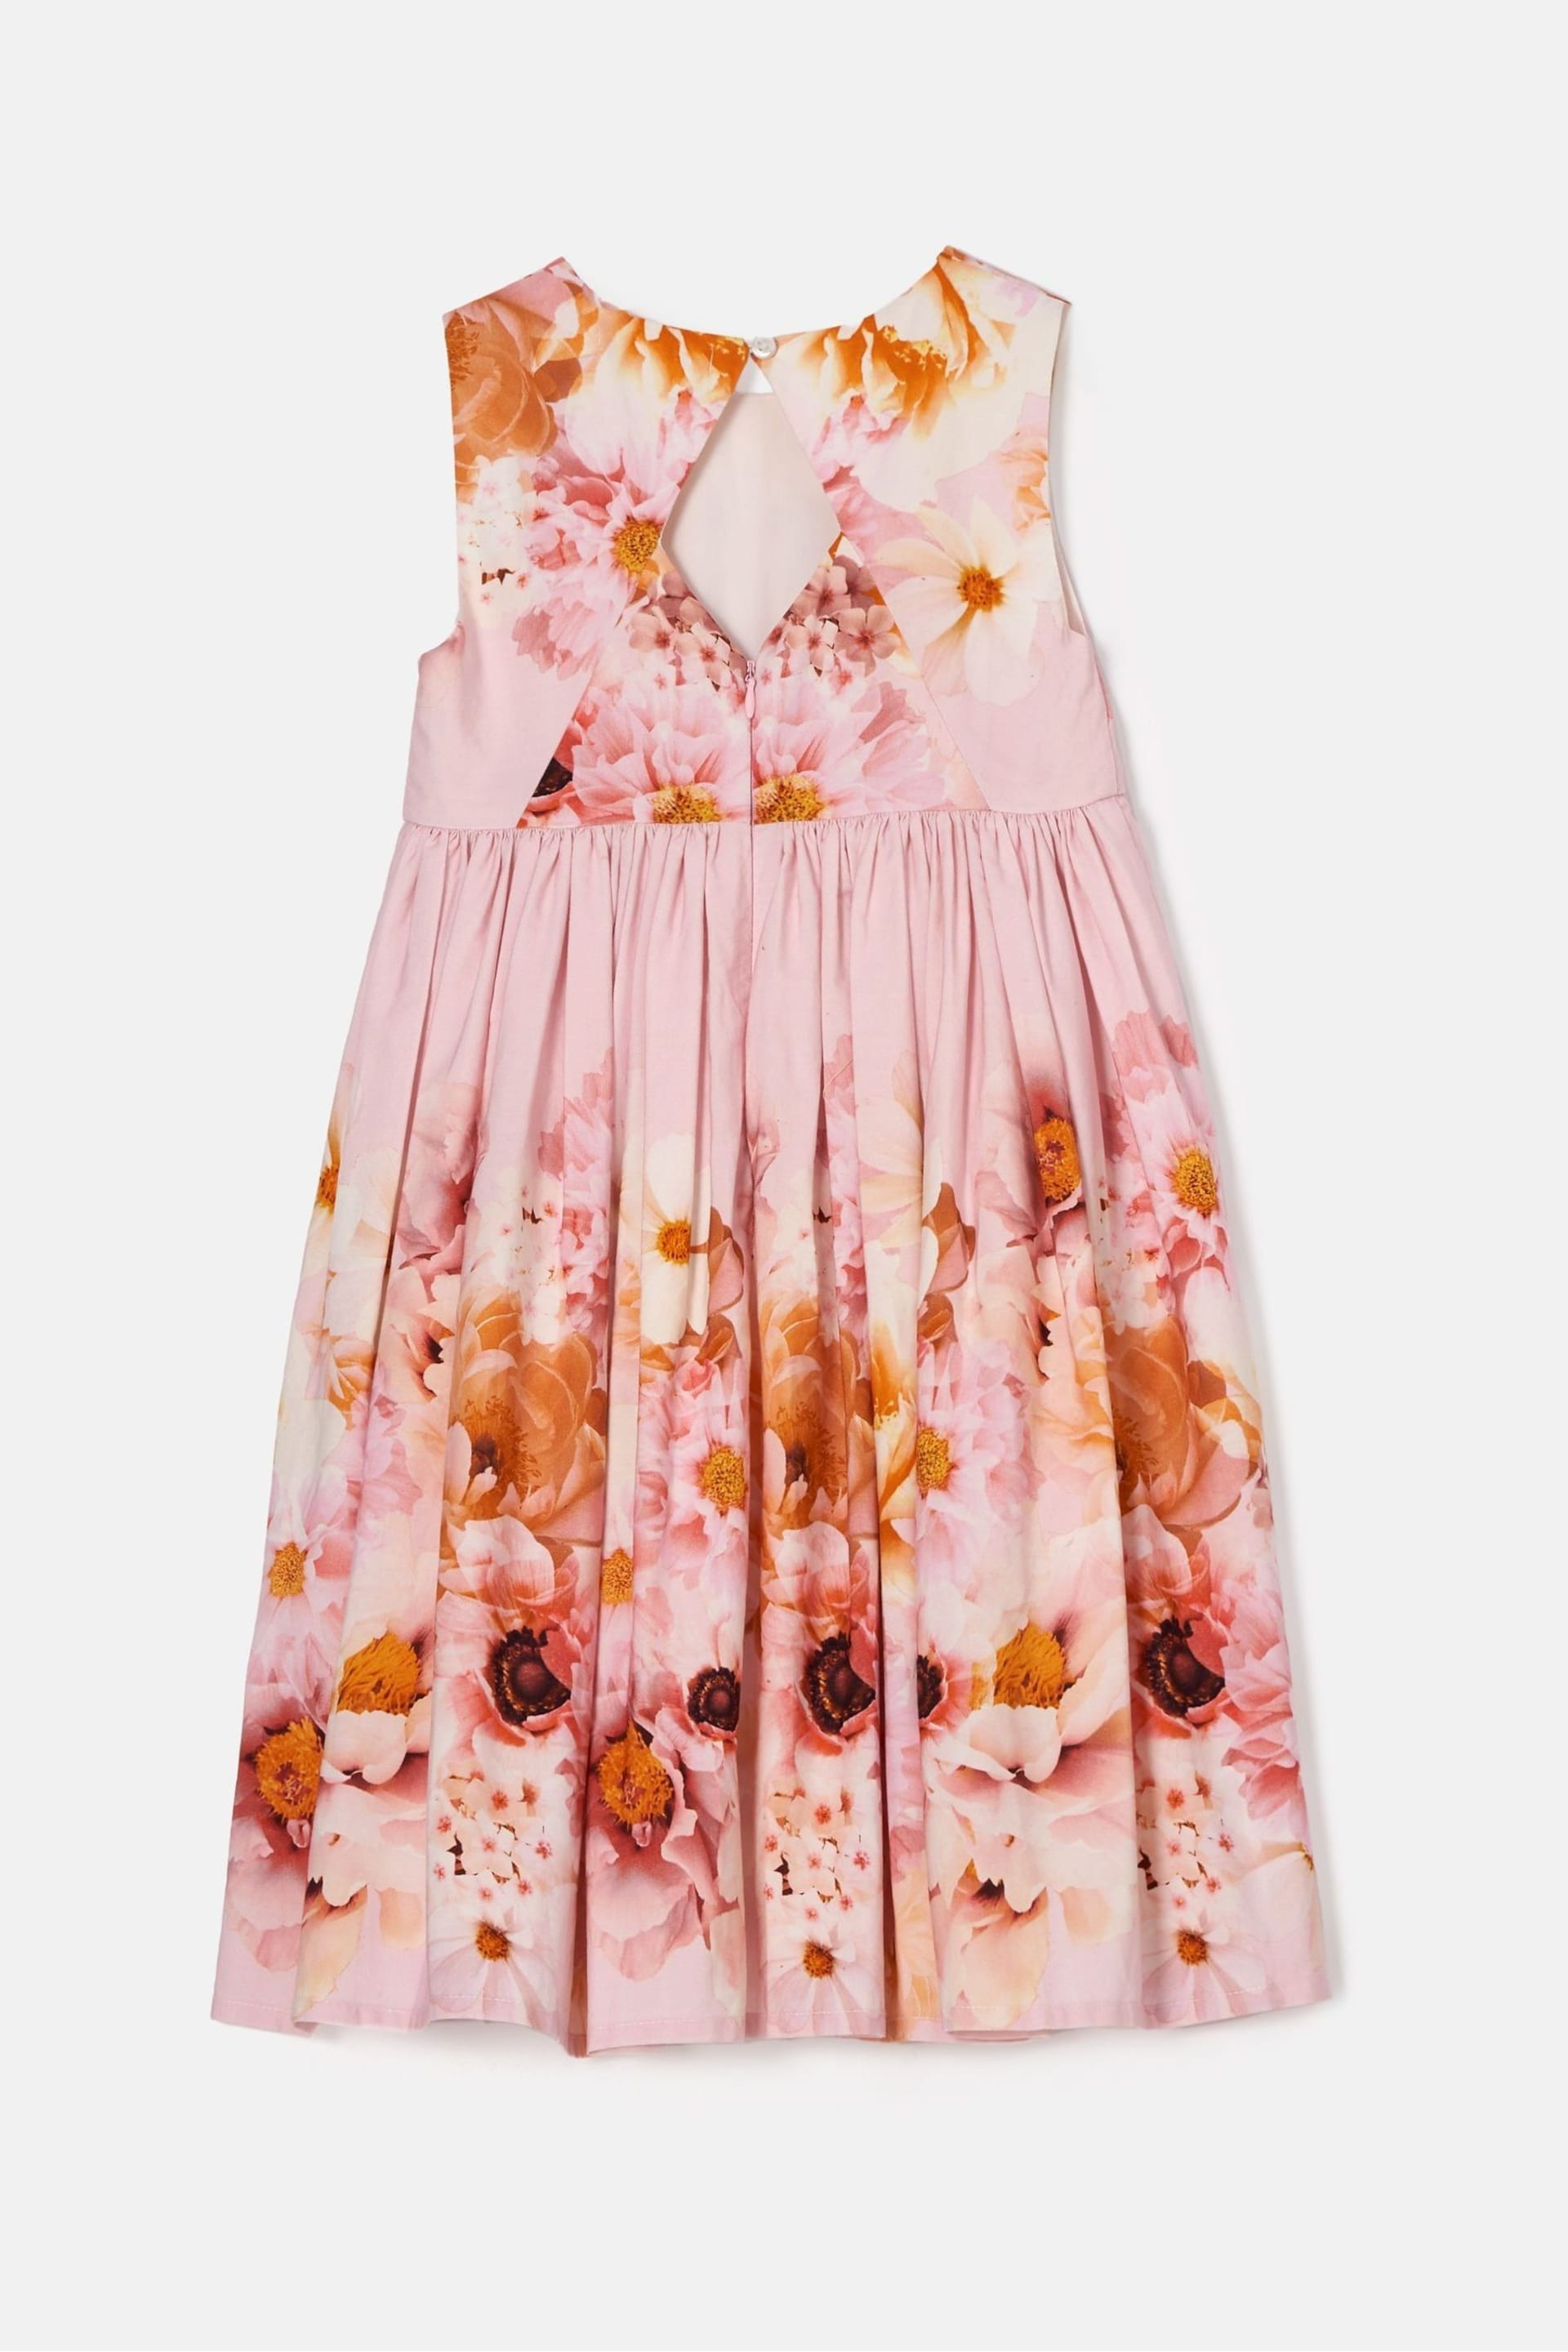 Angel & Rocket Pink Emilia Garden Floral Dress - Image 4 of 5